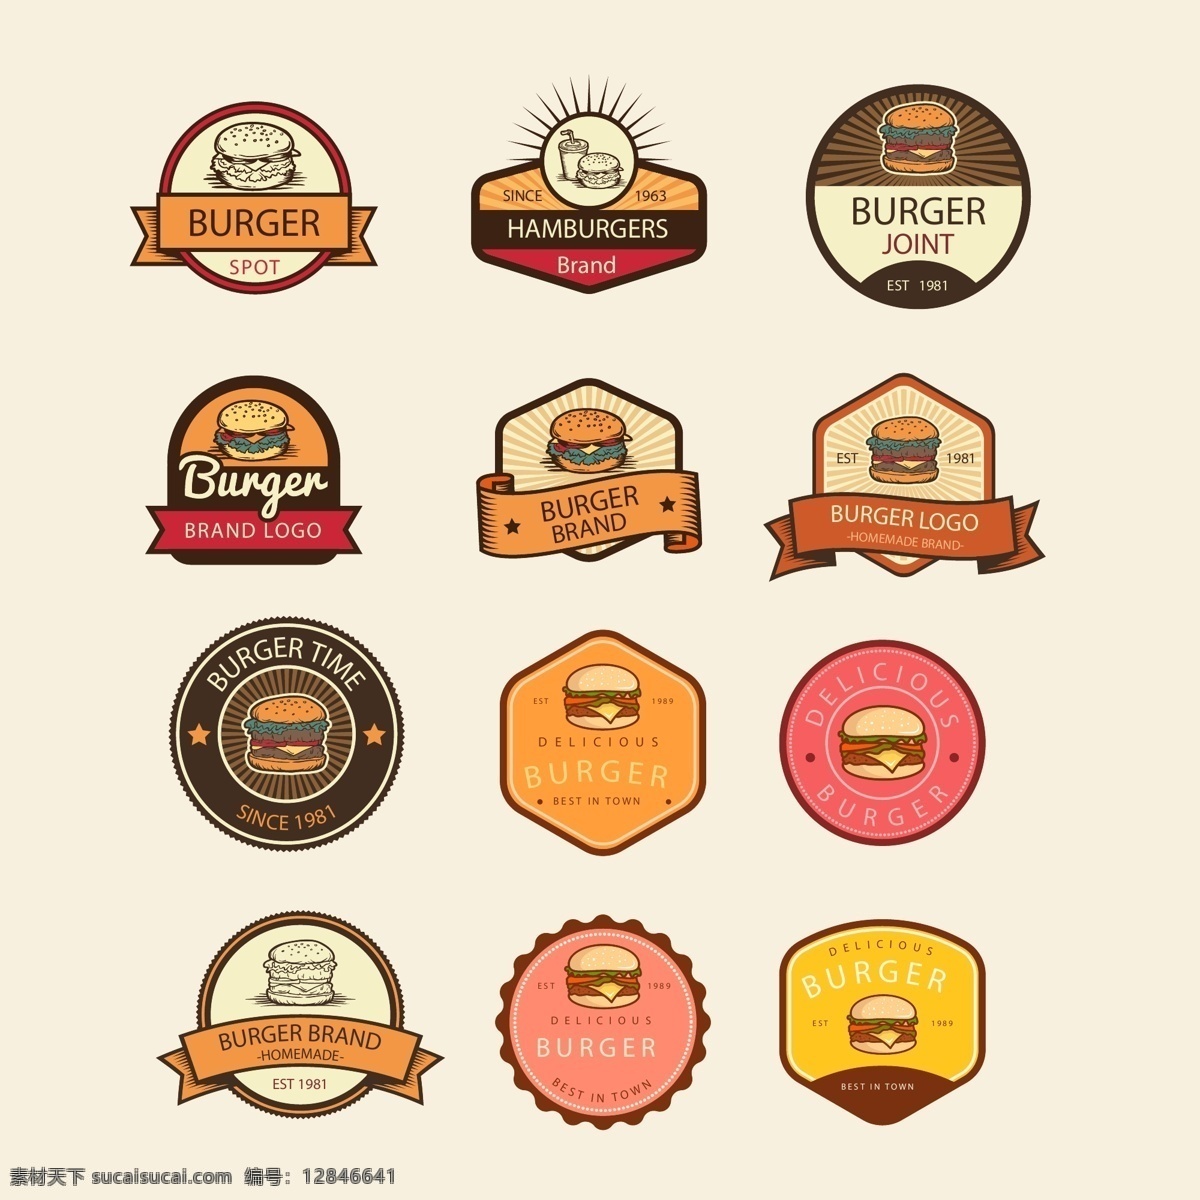 彩色 复古 风格 汉堡包 标识 餐饮 古典 汉堡包元素 汉堡标识 快餐 食品 饮食